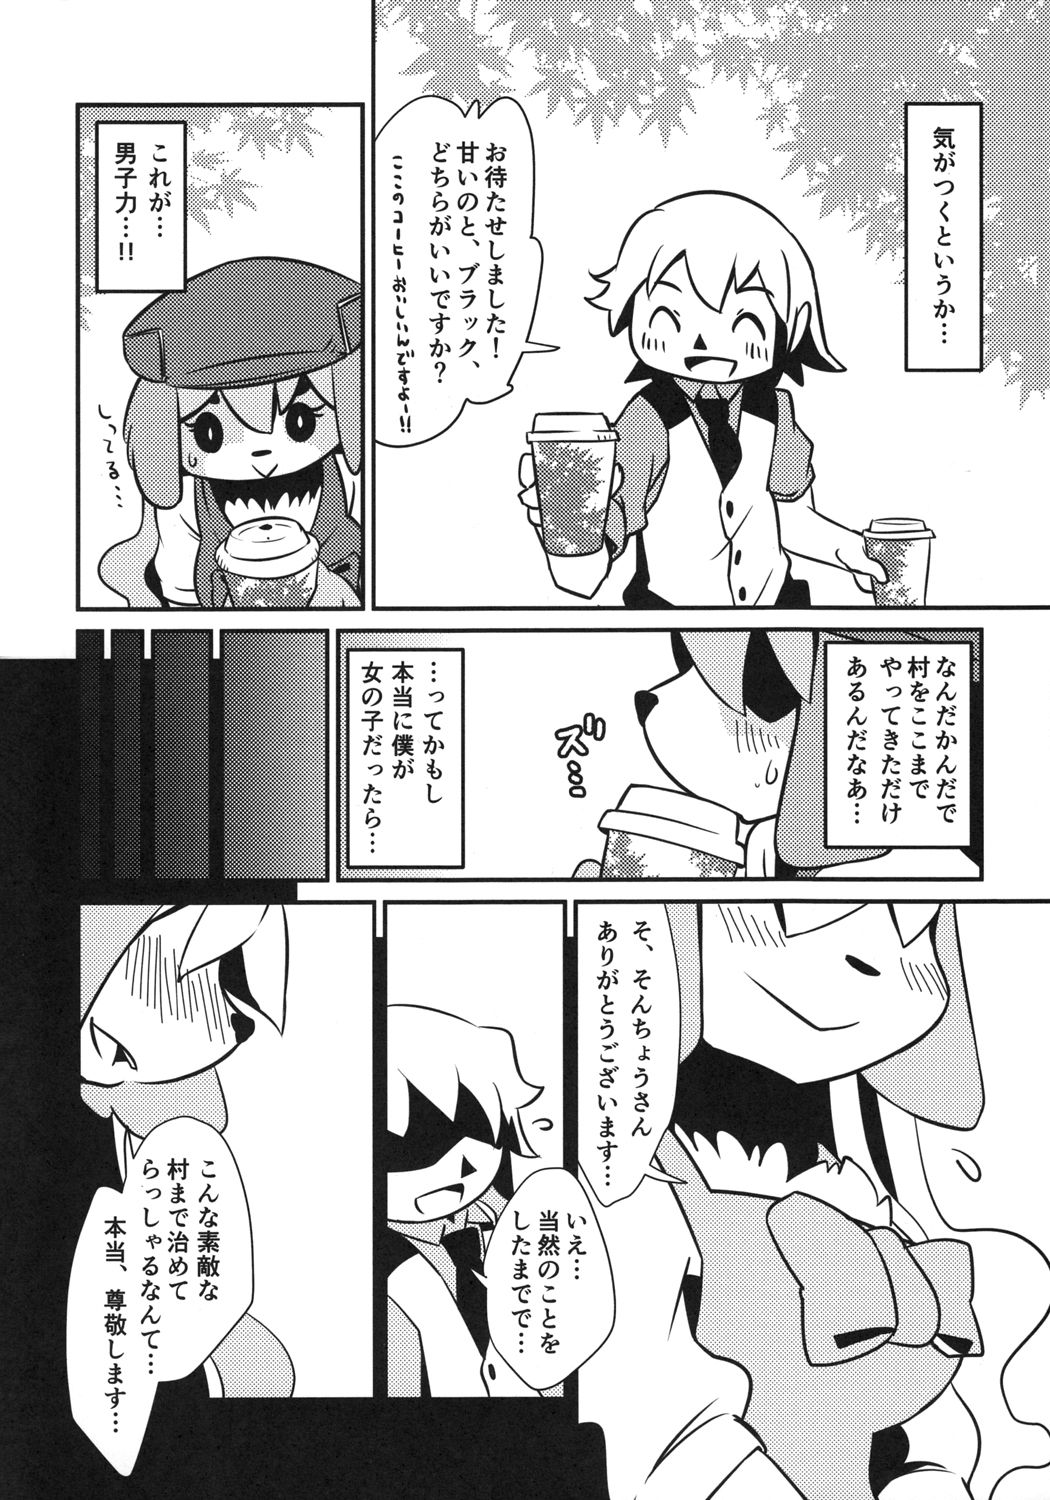 (Mofuket) [Gaby G' God (Kannazuki Akira)] Love Retriever 2 (Animal Crossing) (もふけっと) [Gaby G' God (神無月アキラ)] ラブ♥レトリーバー! 2 (どうぶつの森)